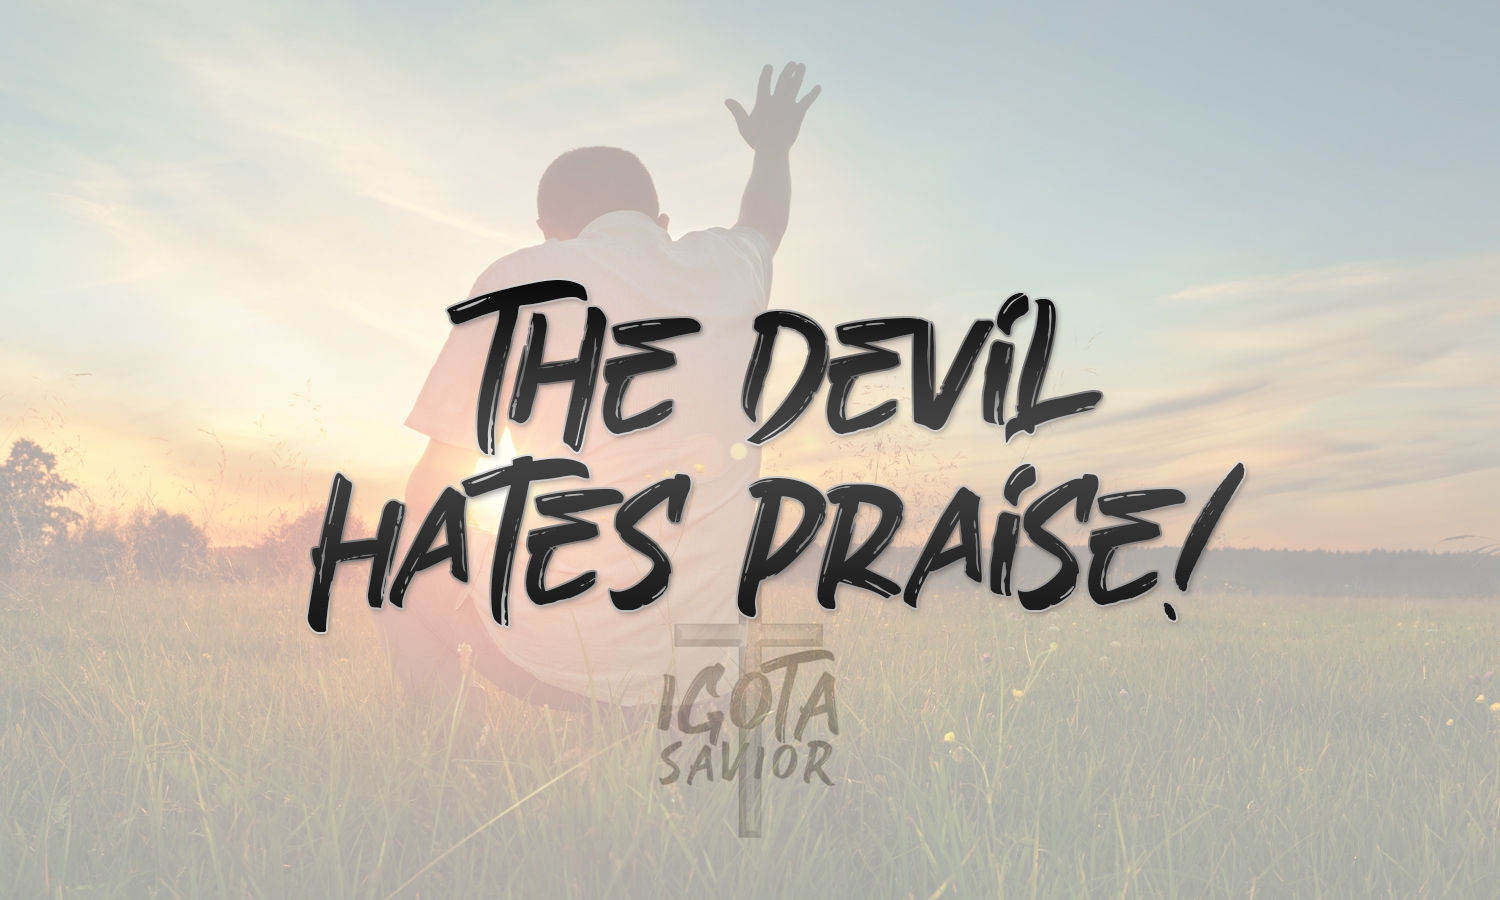 The Devil Hates Praise!